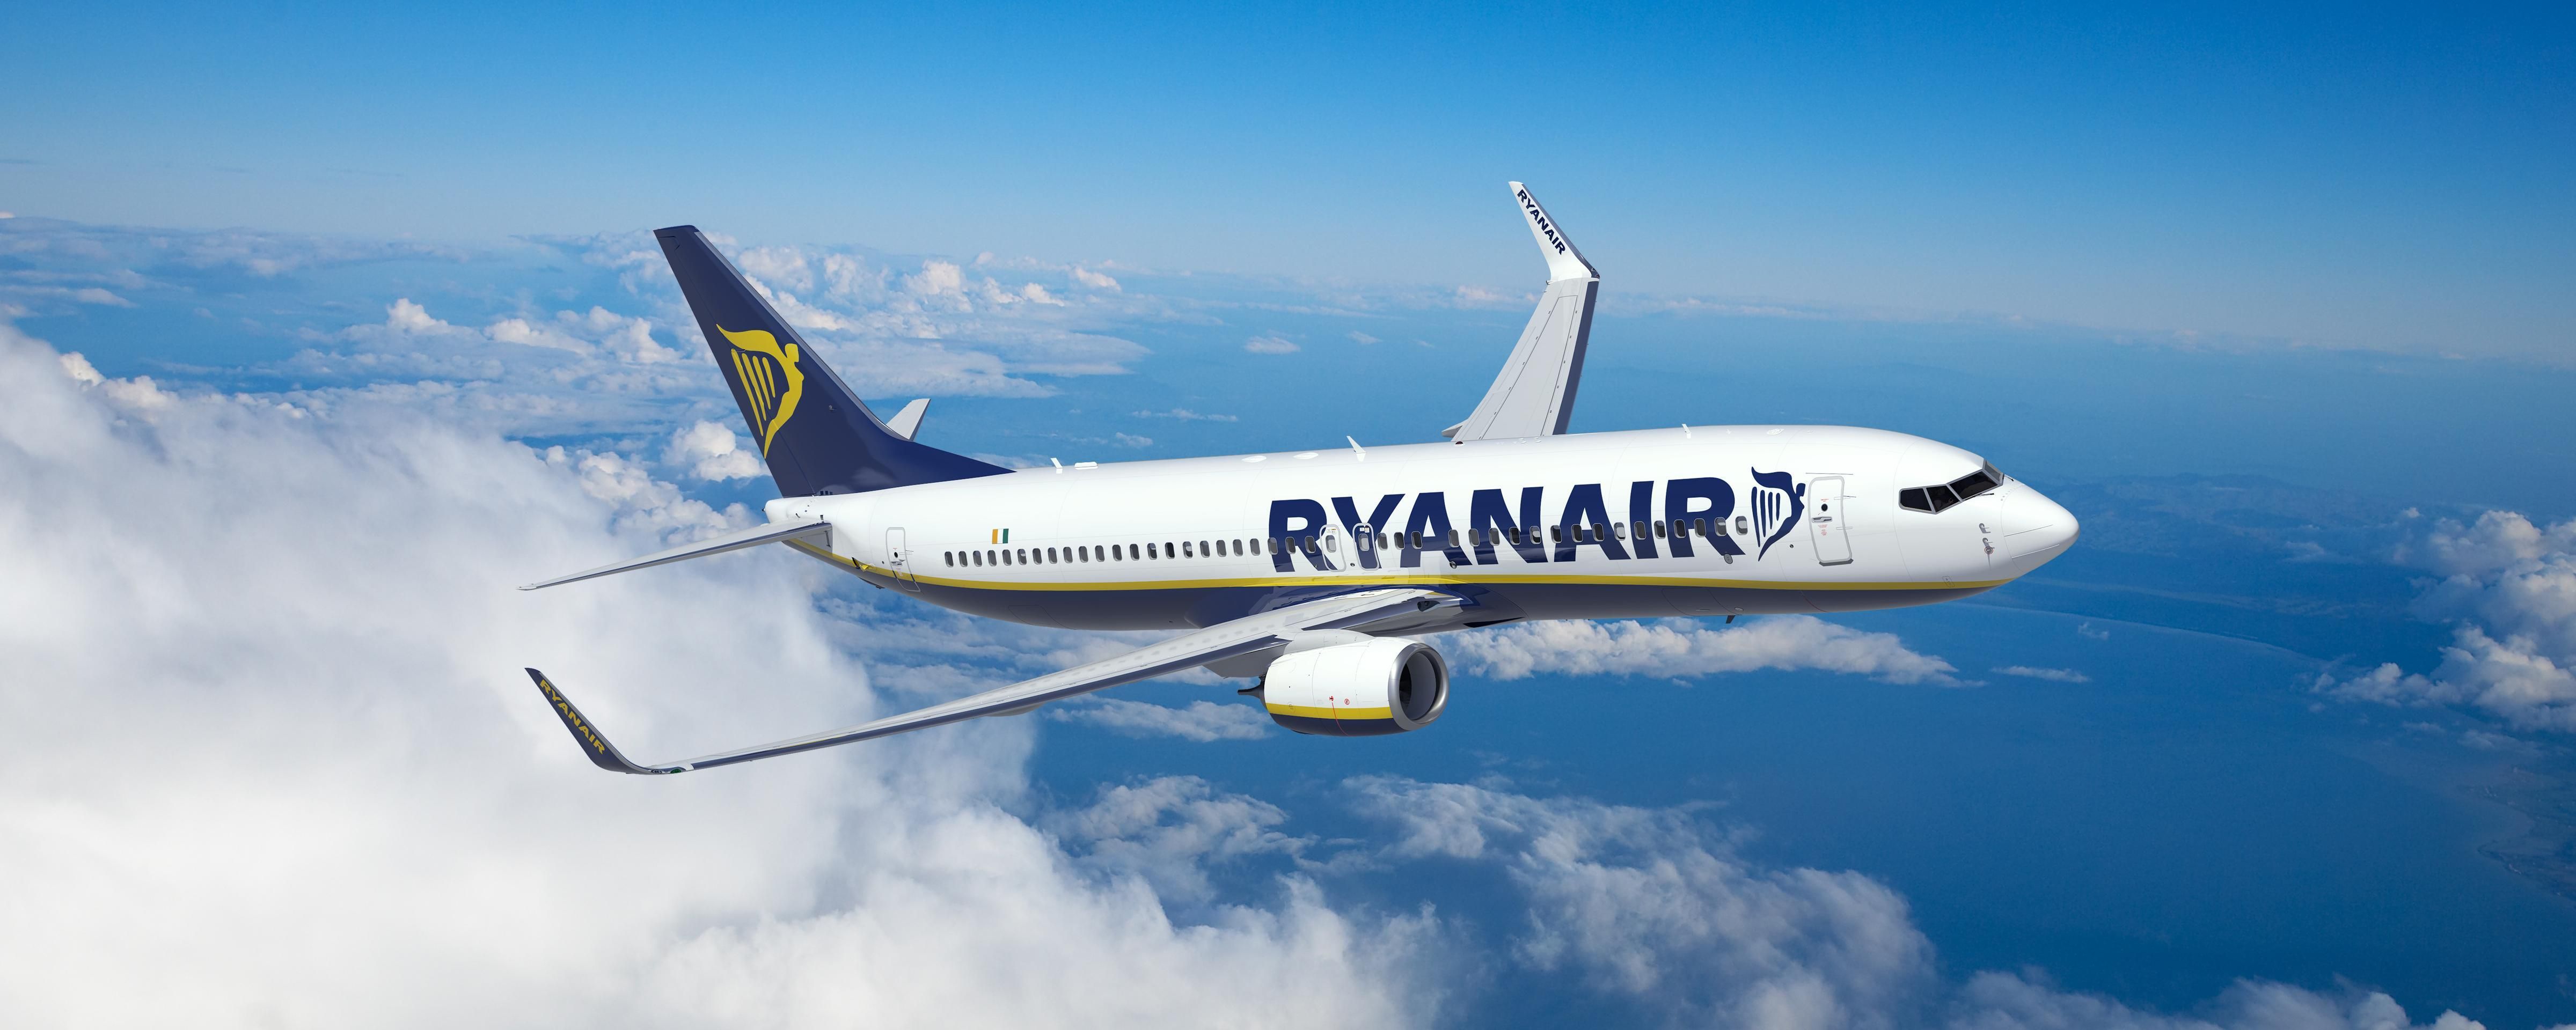 Ryanair запустил новый рейс в Ирландию и устроил распродажу билетов